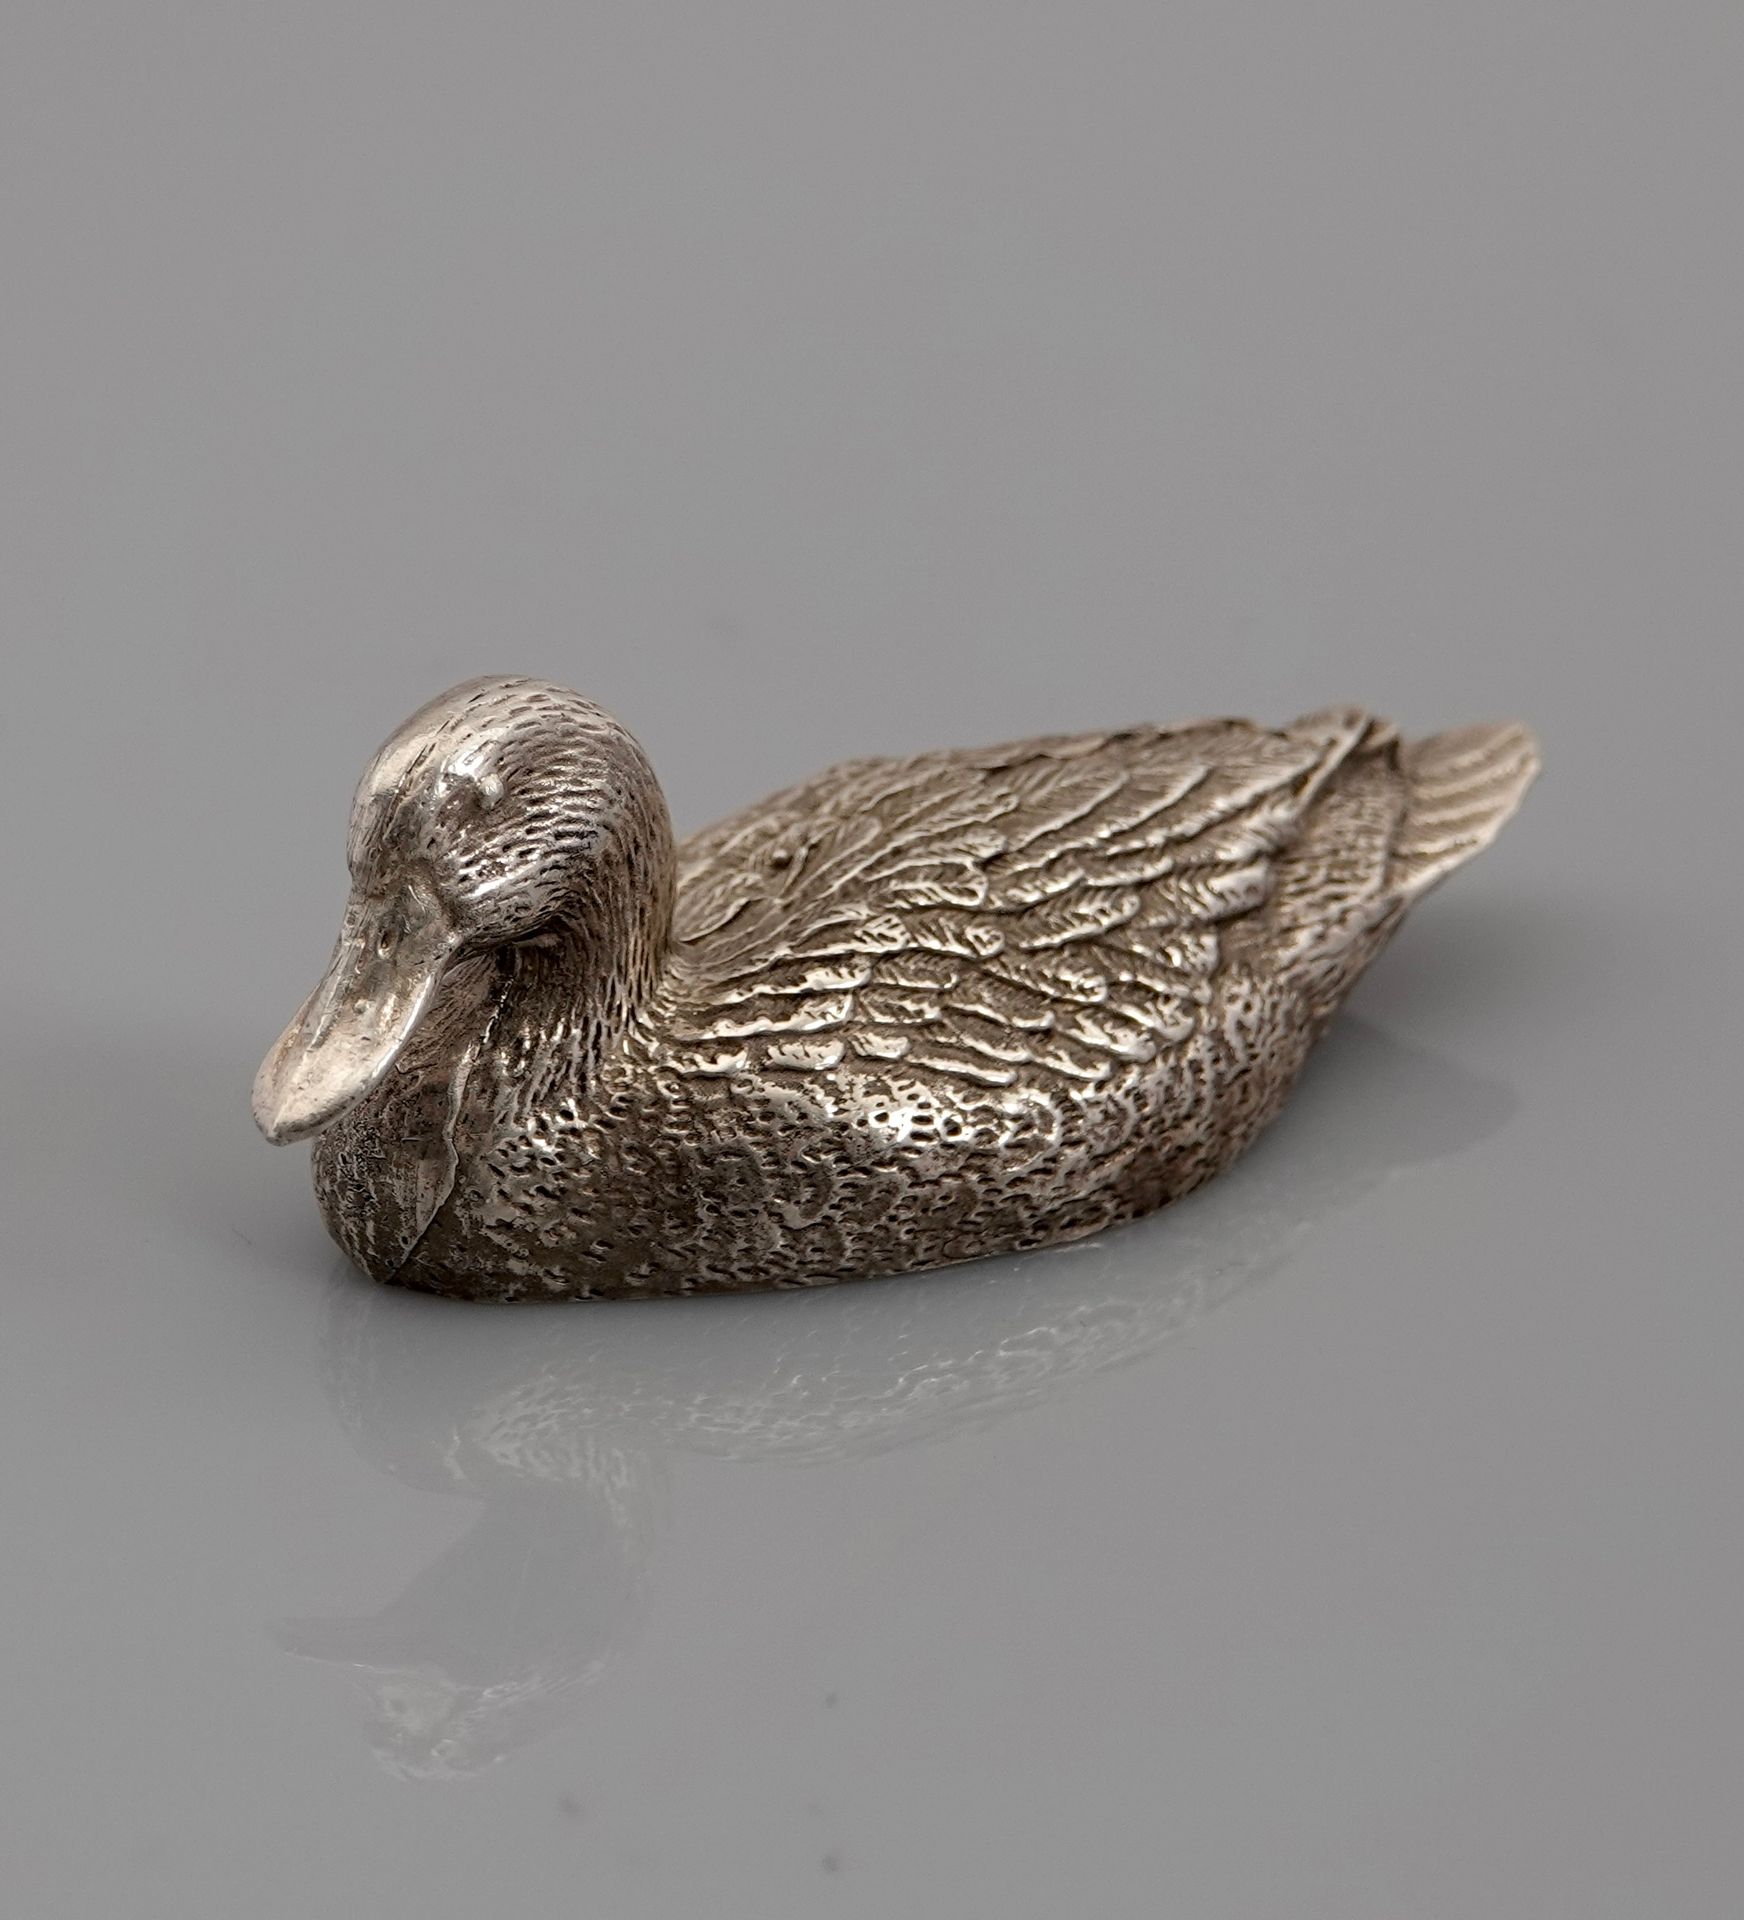 Null Duck, silver 925 MM, length 7 cm, Minerve hallmark, weight: 140gr. Gross.